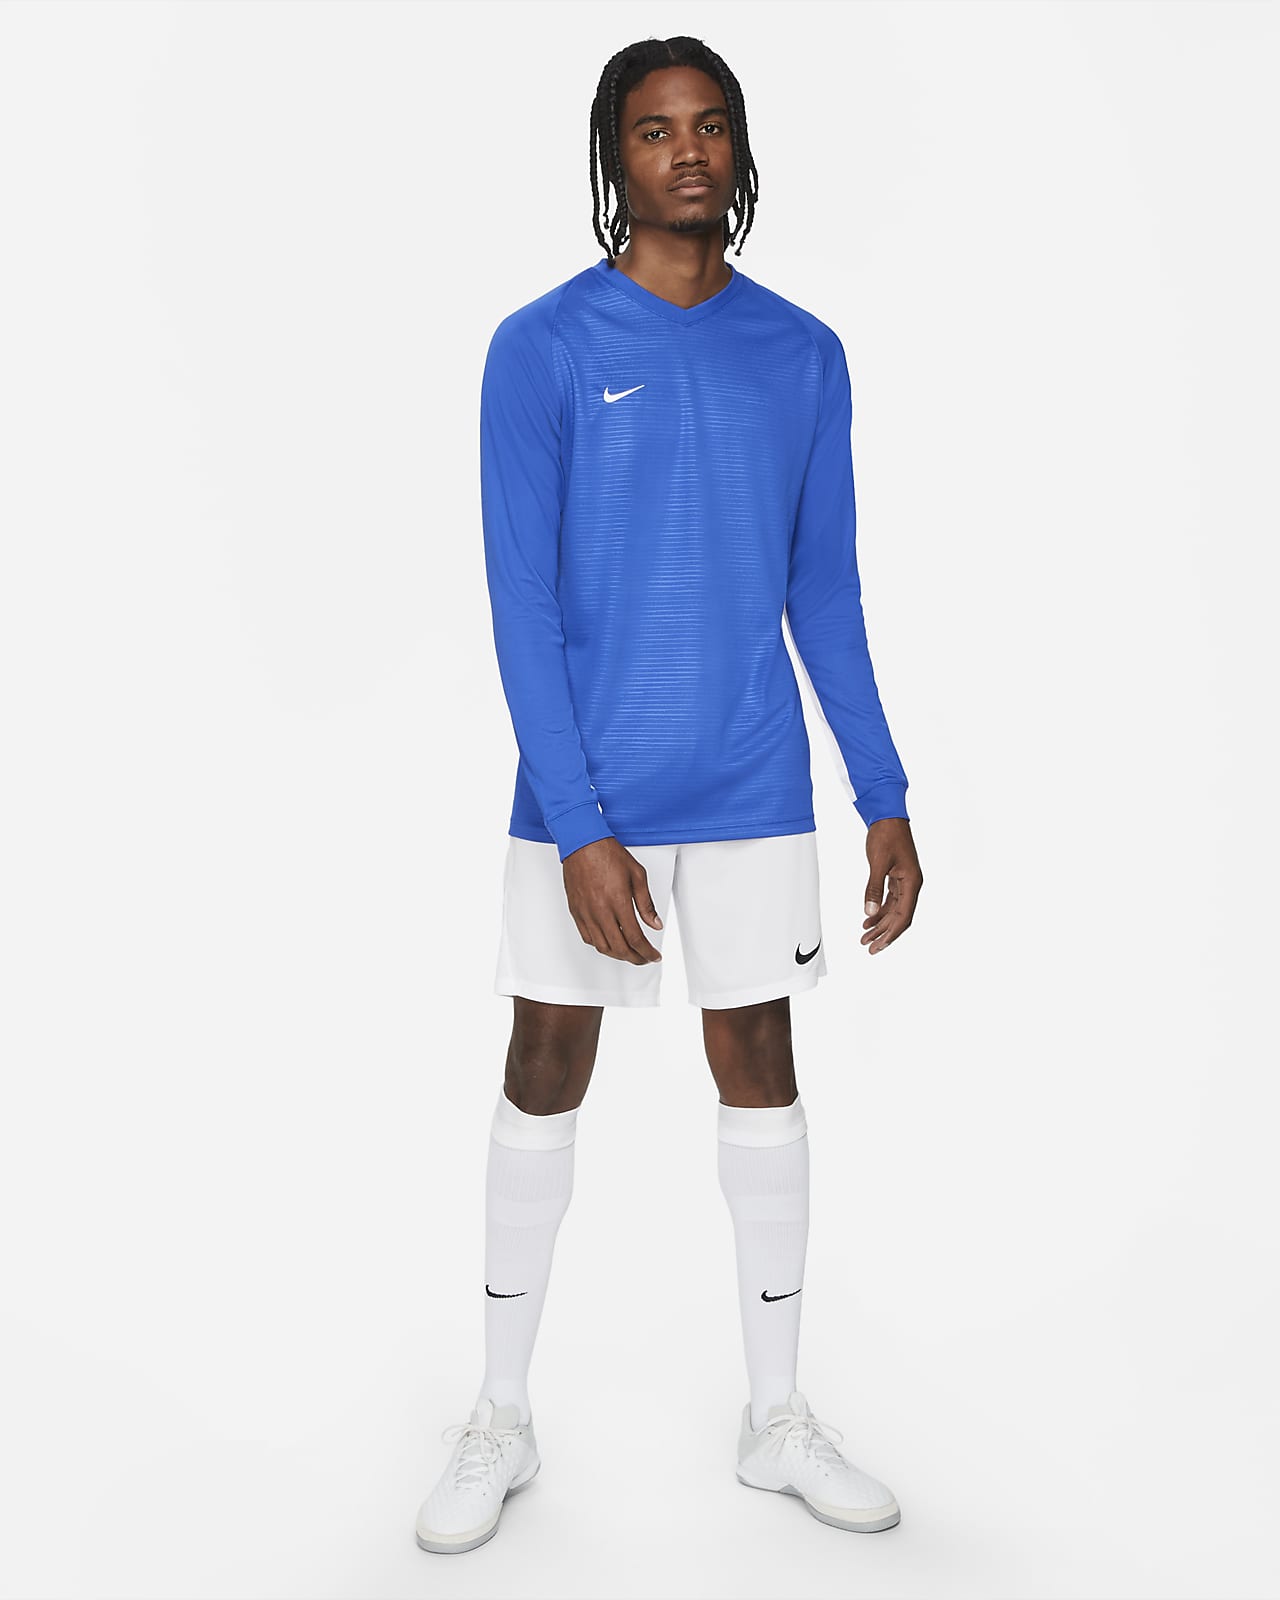 Nike Dri-FIT Tiempo Men's Long-Sleeve Soccer Jersey